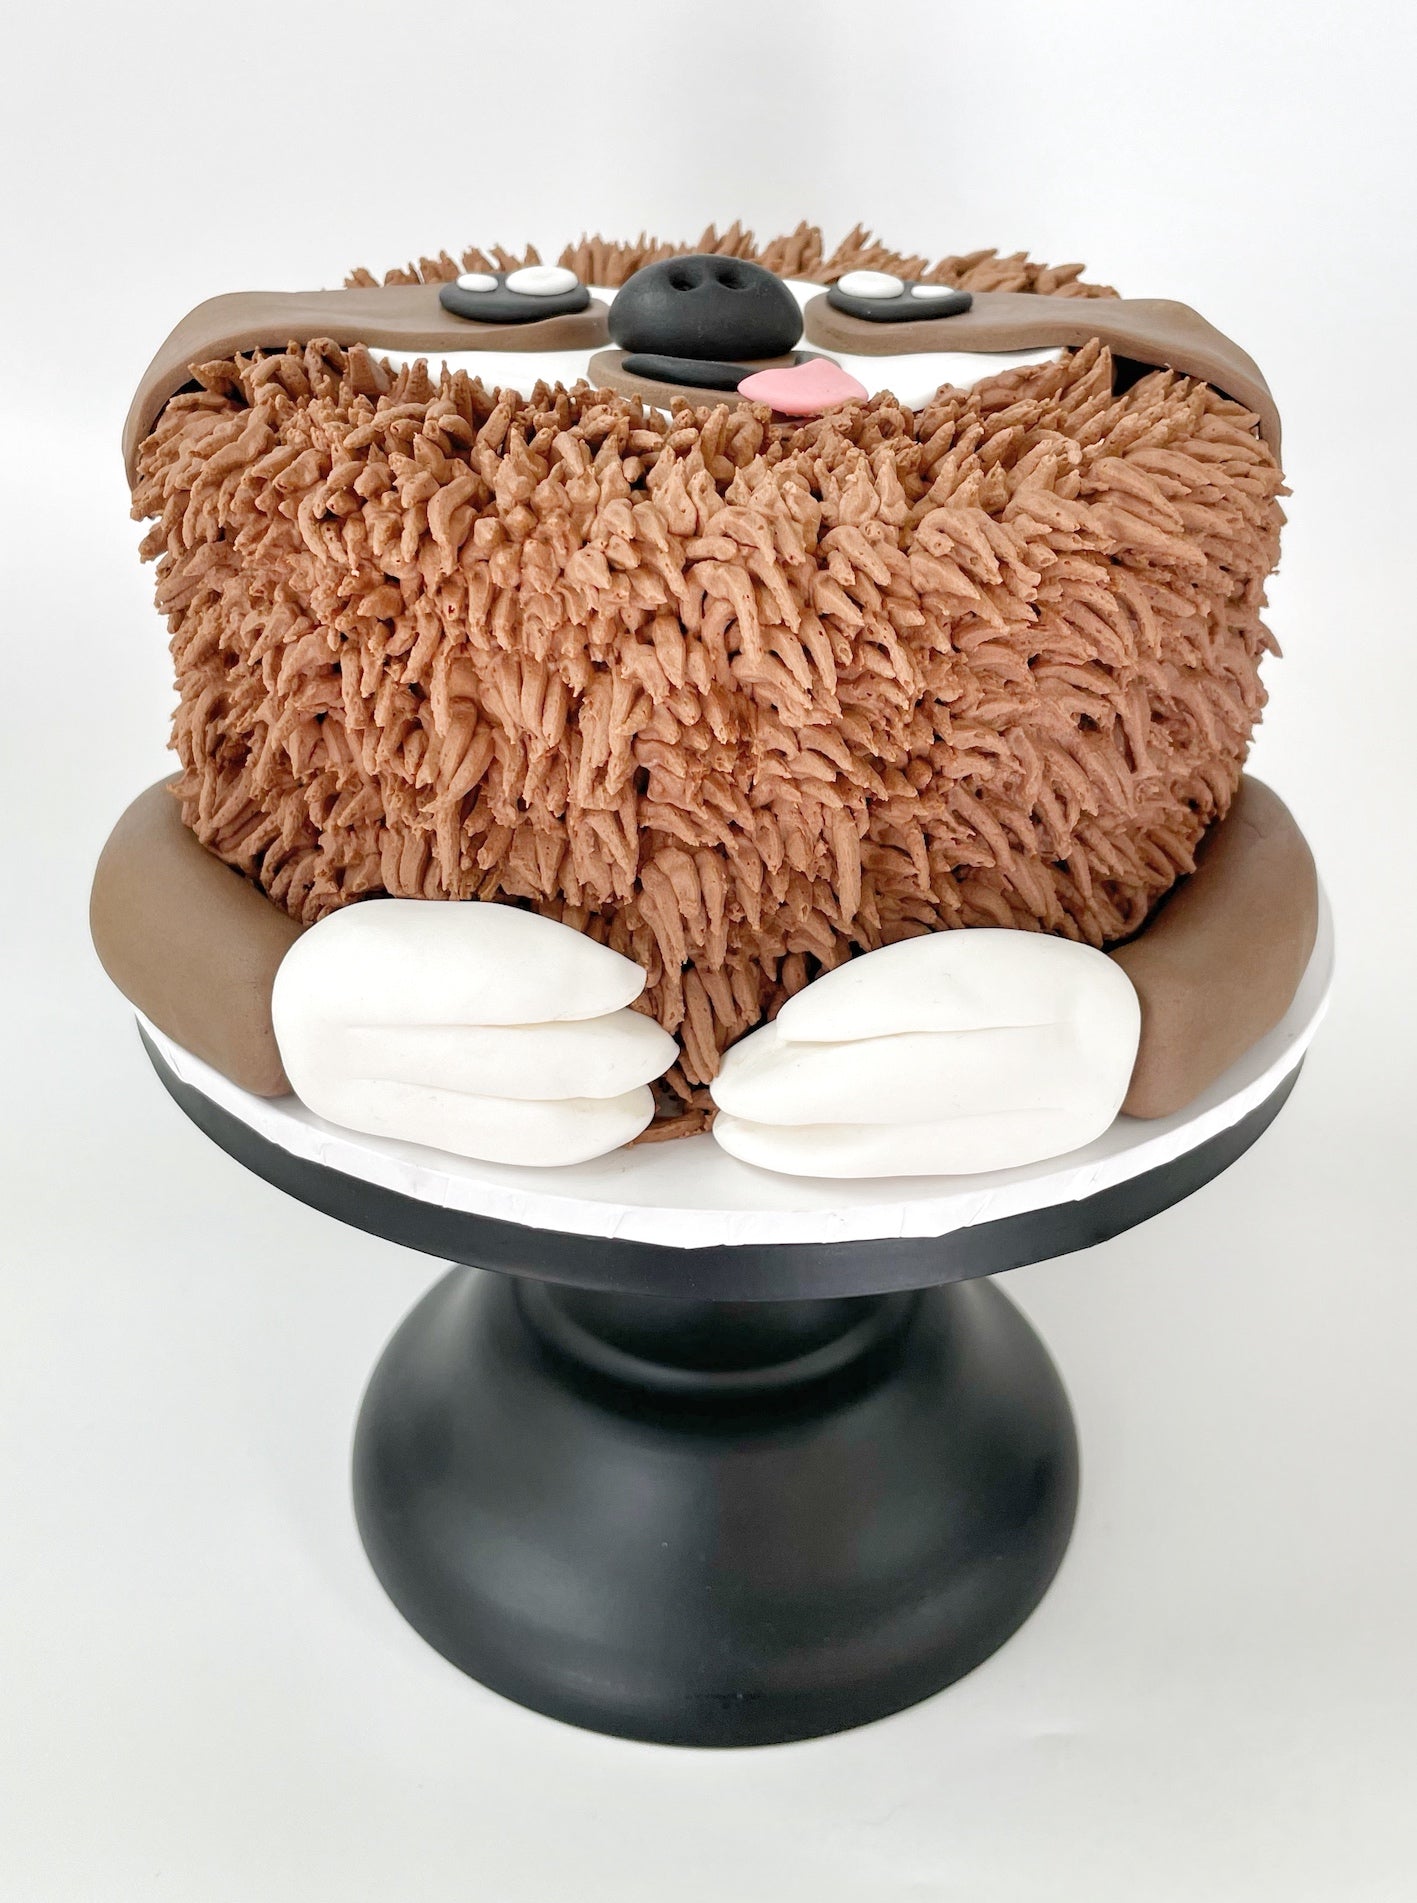 Sloth Cake Kit, Animal Cake Kit, DIY Cake Kit